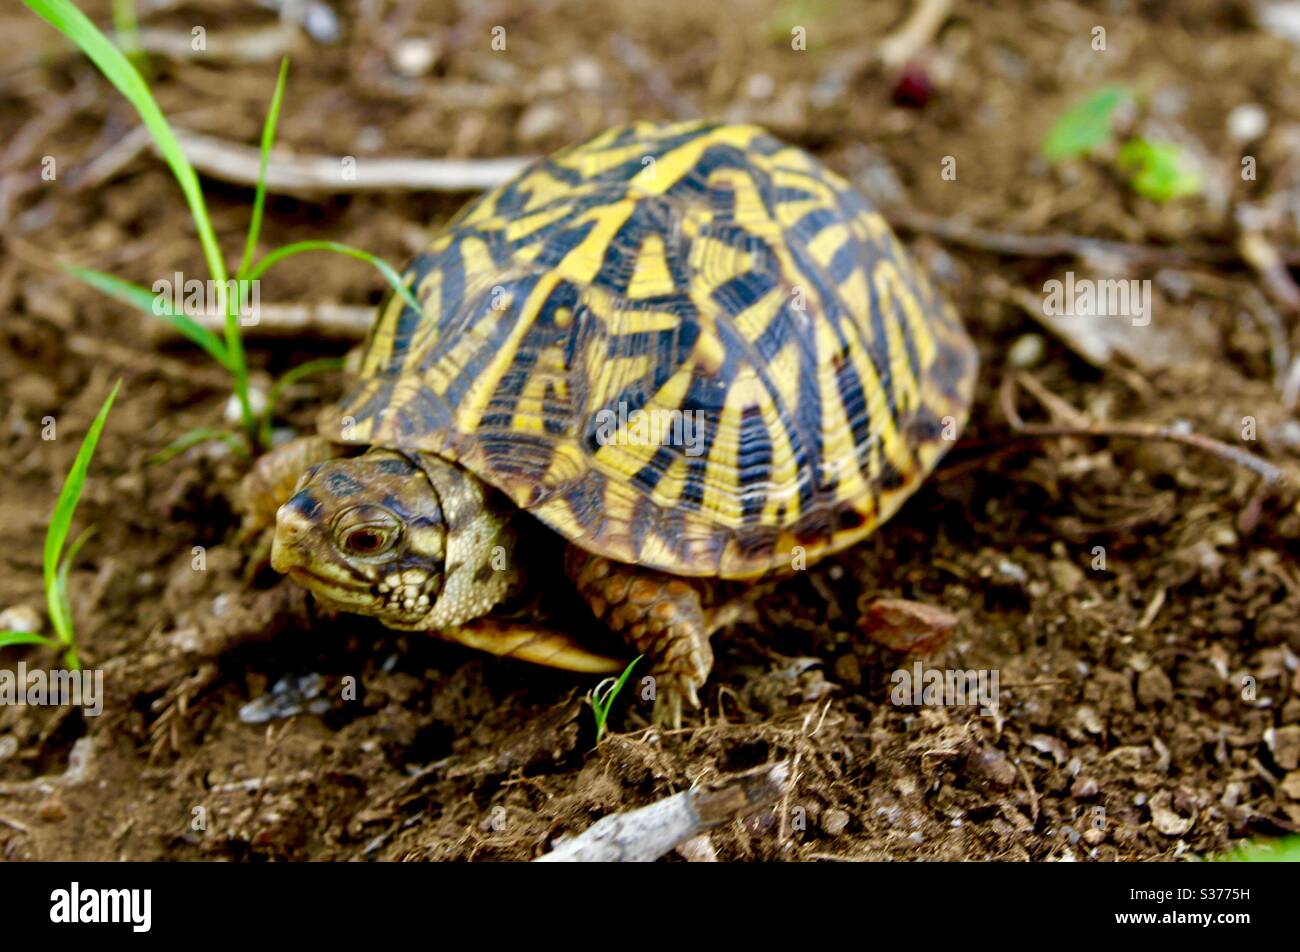 Terrepene ornate box turtle Wichita Mountains Oklahoma Stock Photo